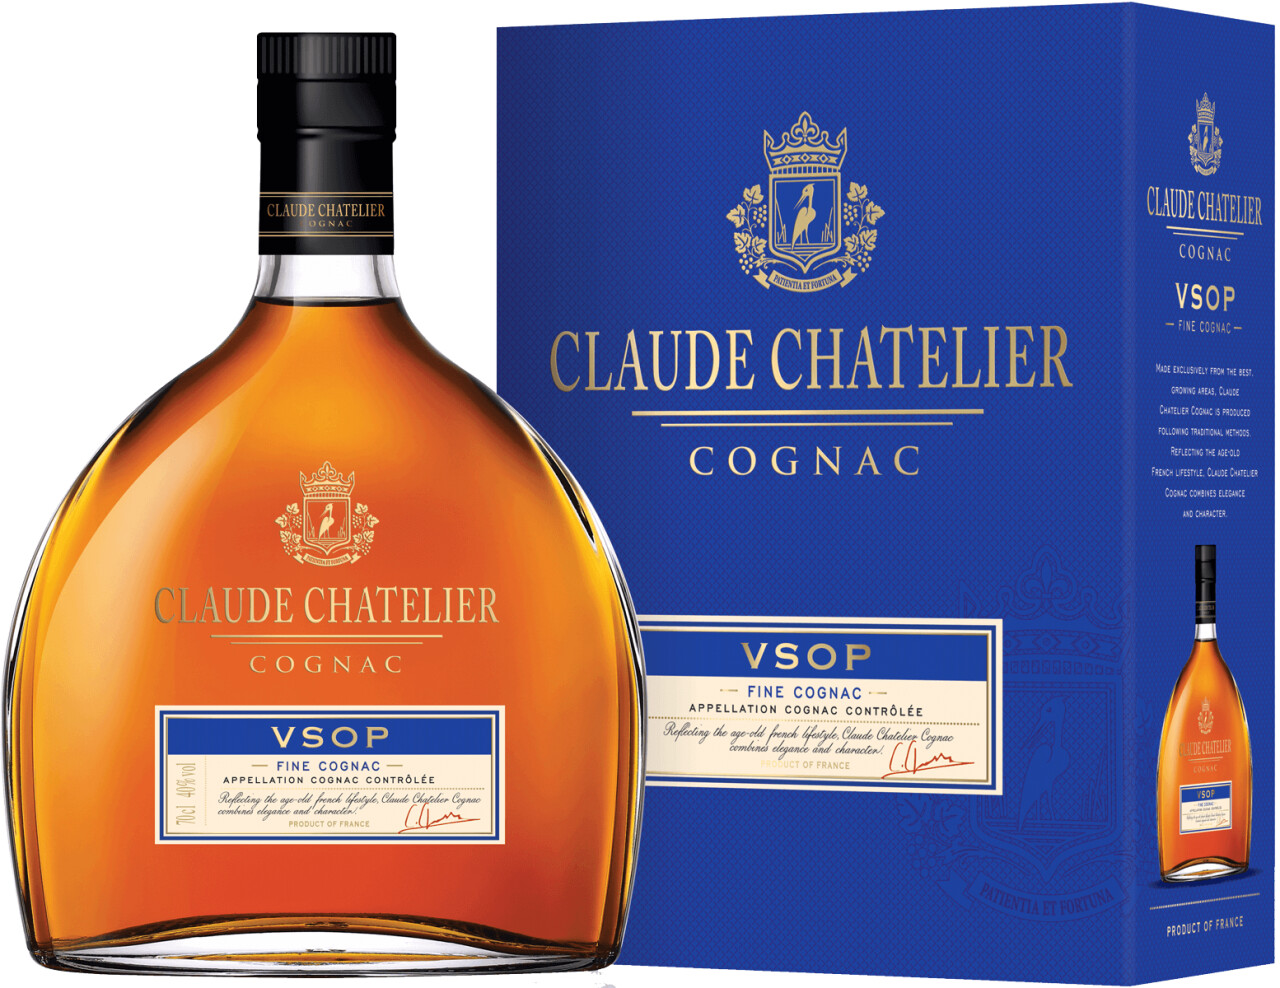 Claude Chatelier VSOP Cognac 40% 37,90 | € 0,7l bei Preisvergleich ab